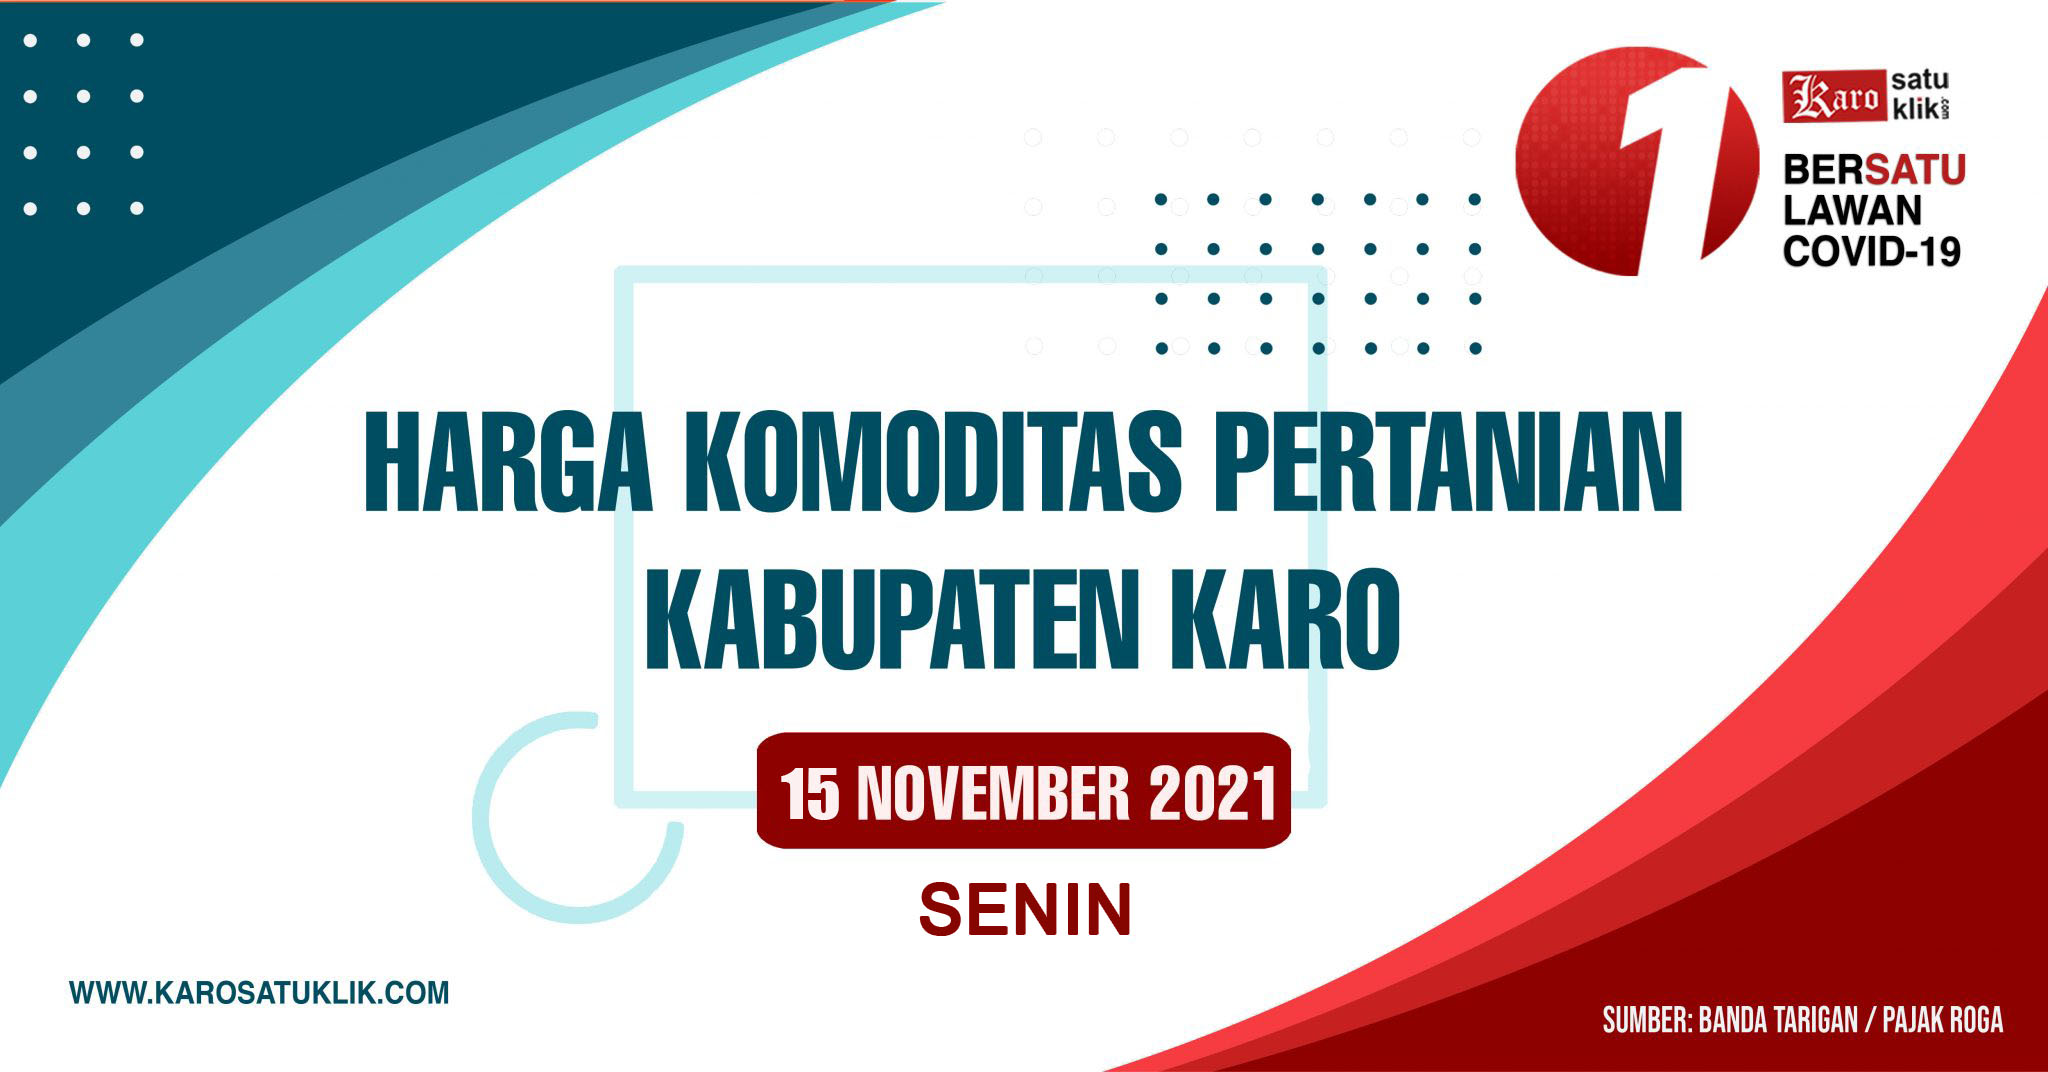 Daftar Harga Komoditas Pertanian Kabupaten Karo, 15 November 2021